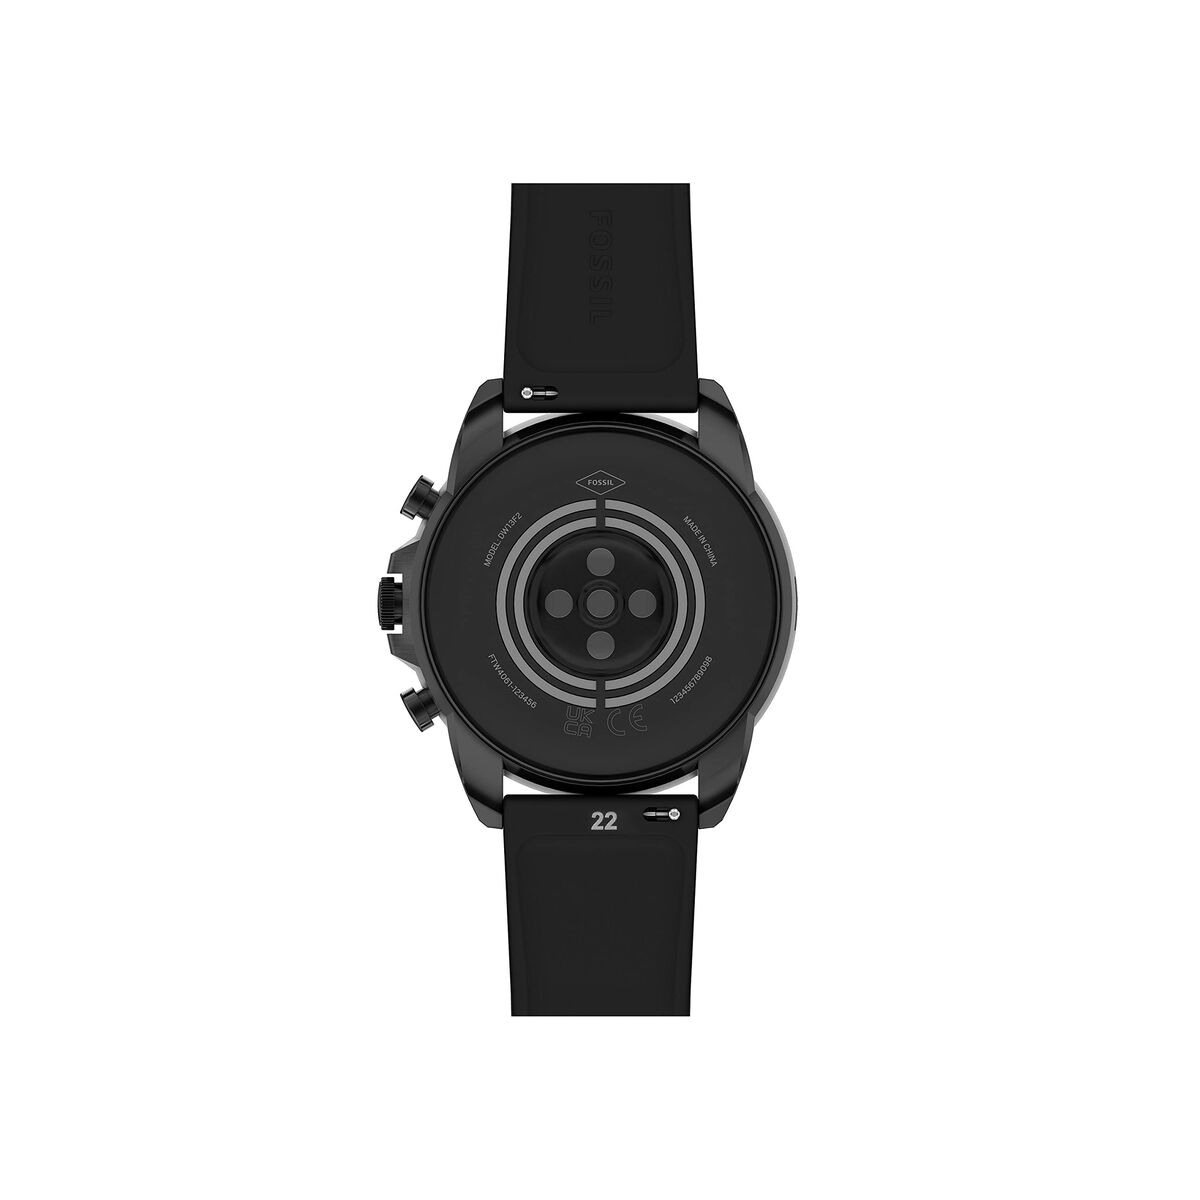 Smartwatch Fossil FTW4061 44 mm 1,28" Zwart